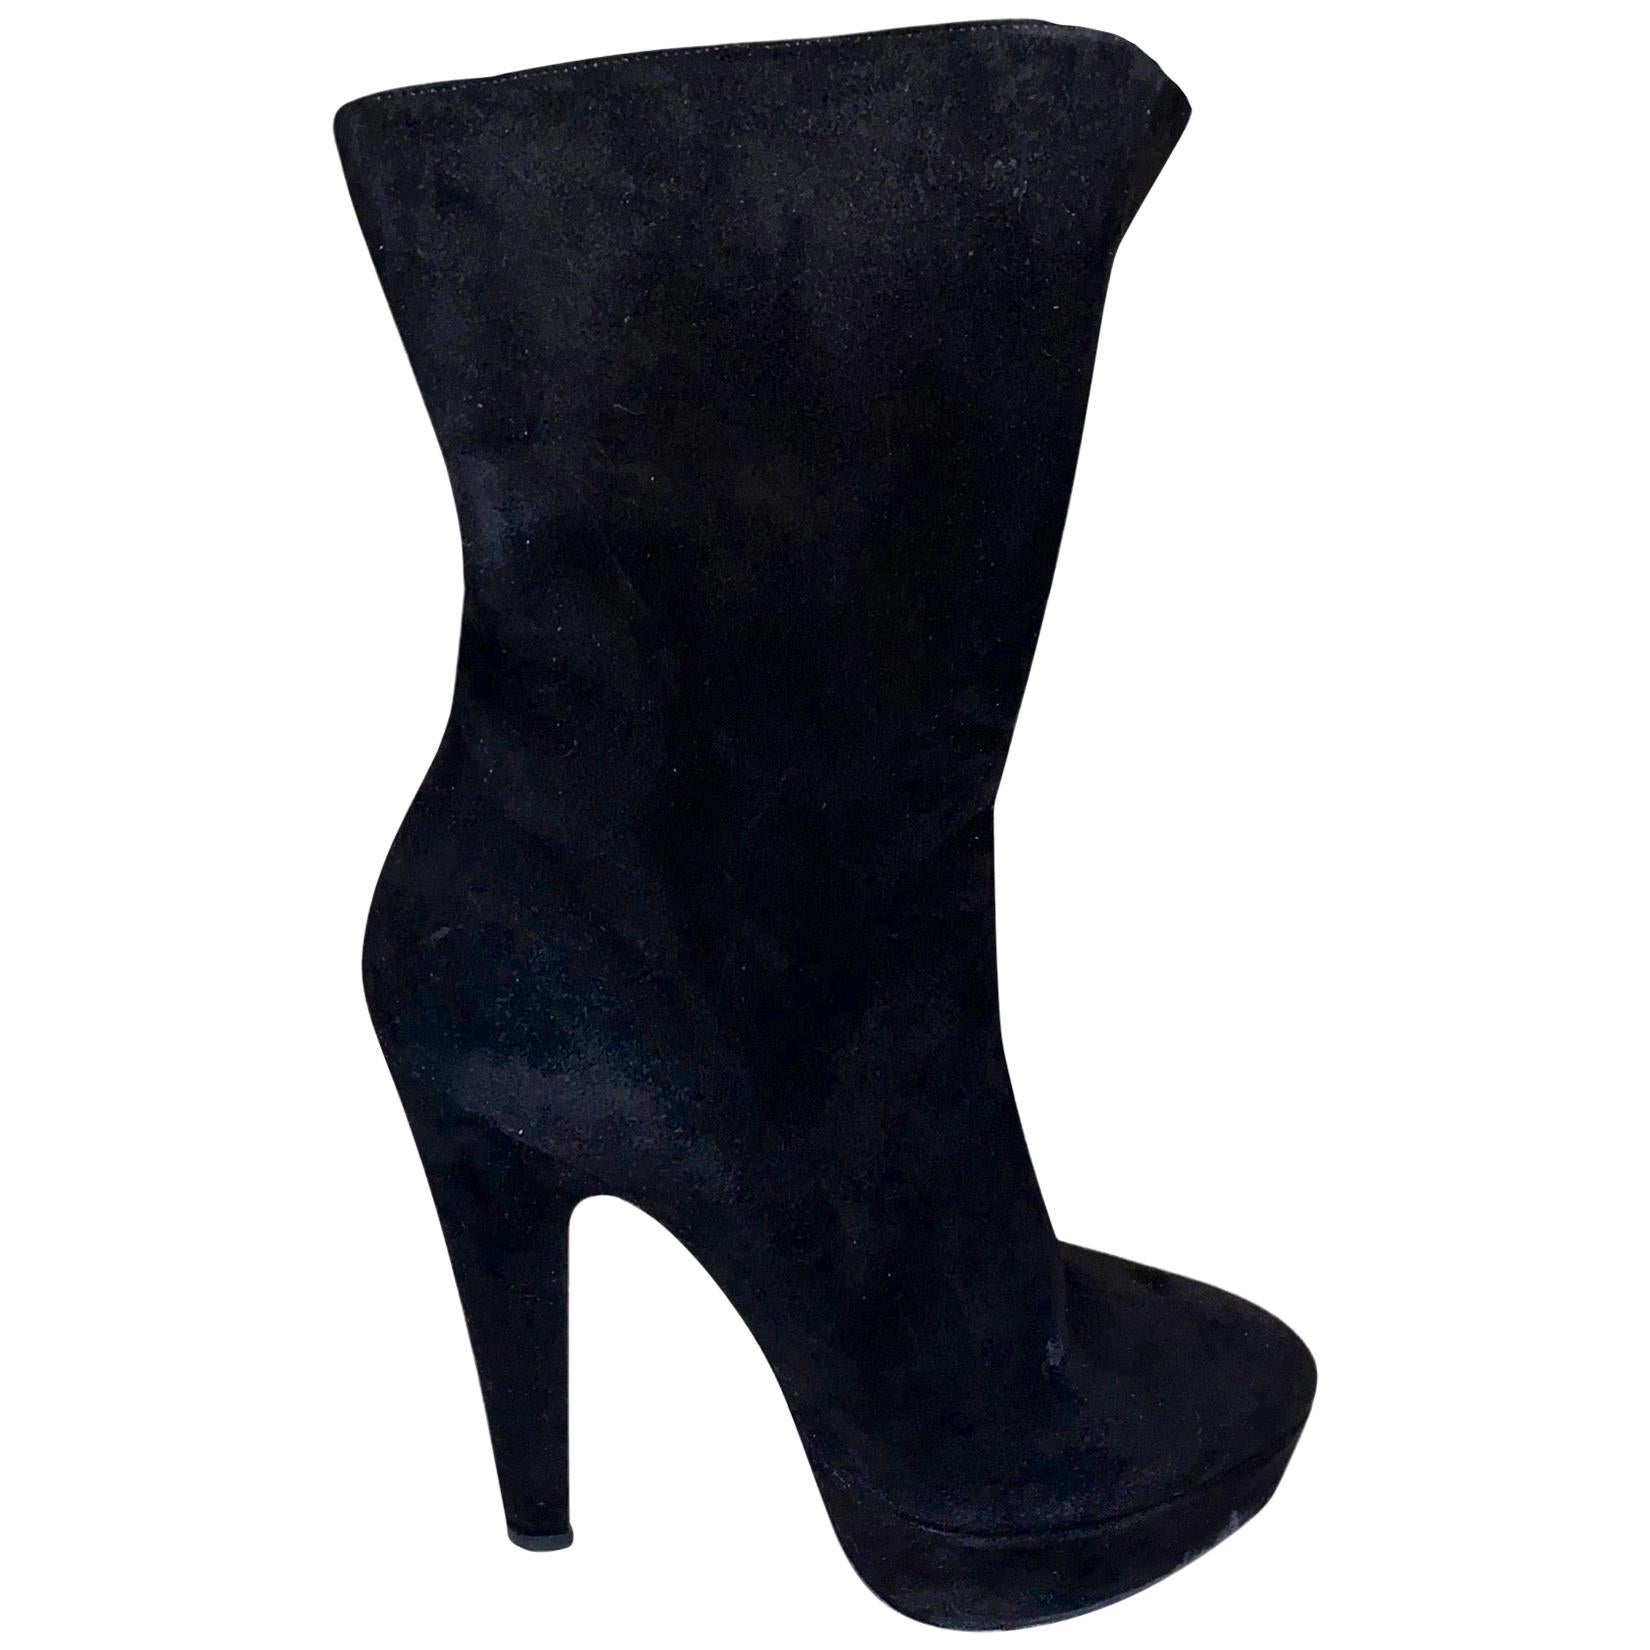 UNWORN Alaia Black Suede Platform Lace Up Boots Booties High Heels 37.5